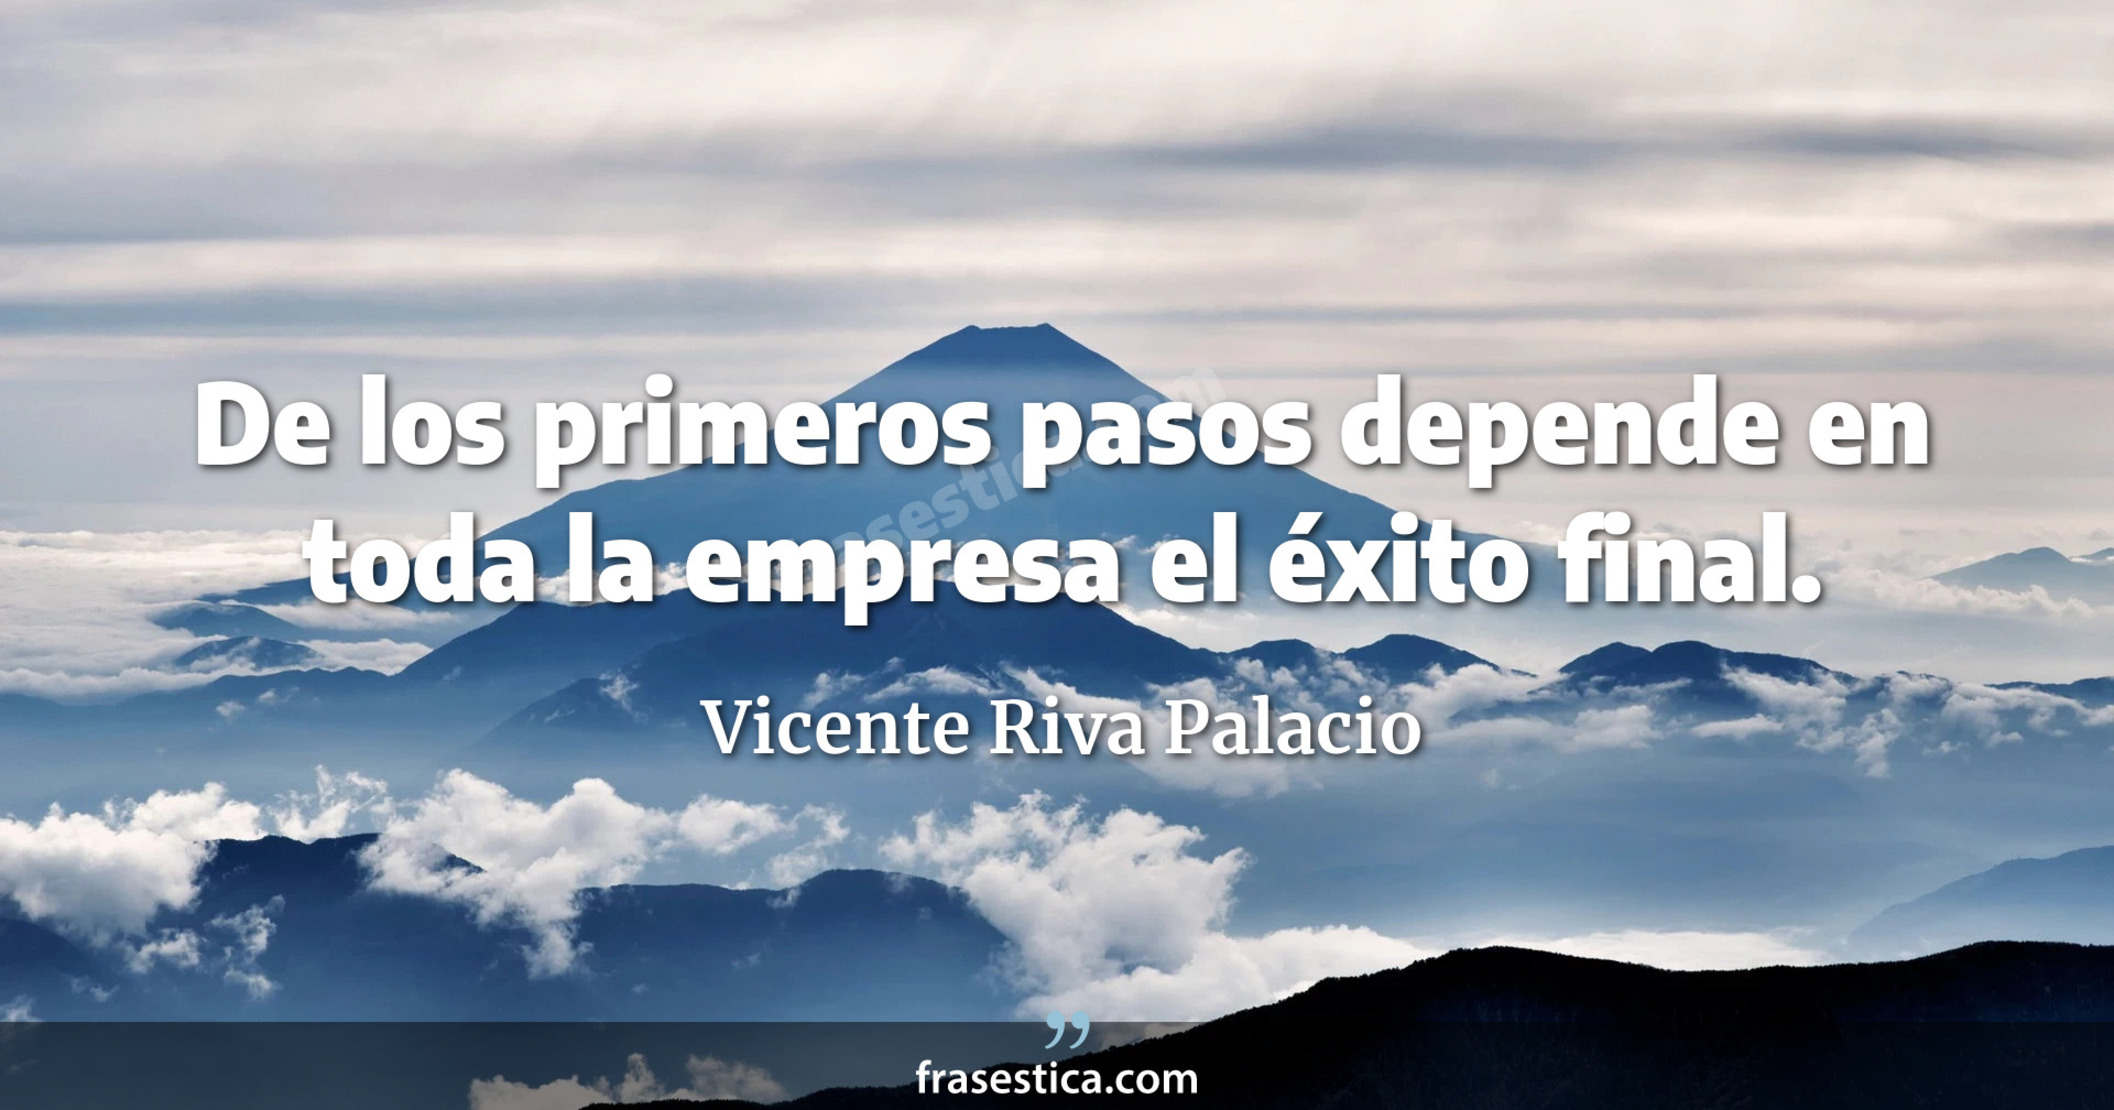 De los primeros pasos depende en toda la empresa el éxito final. - Vicente Riva Palacio